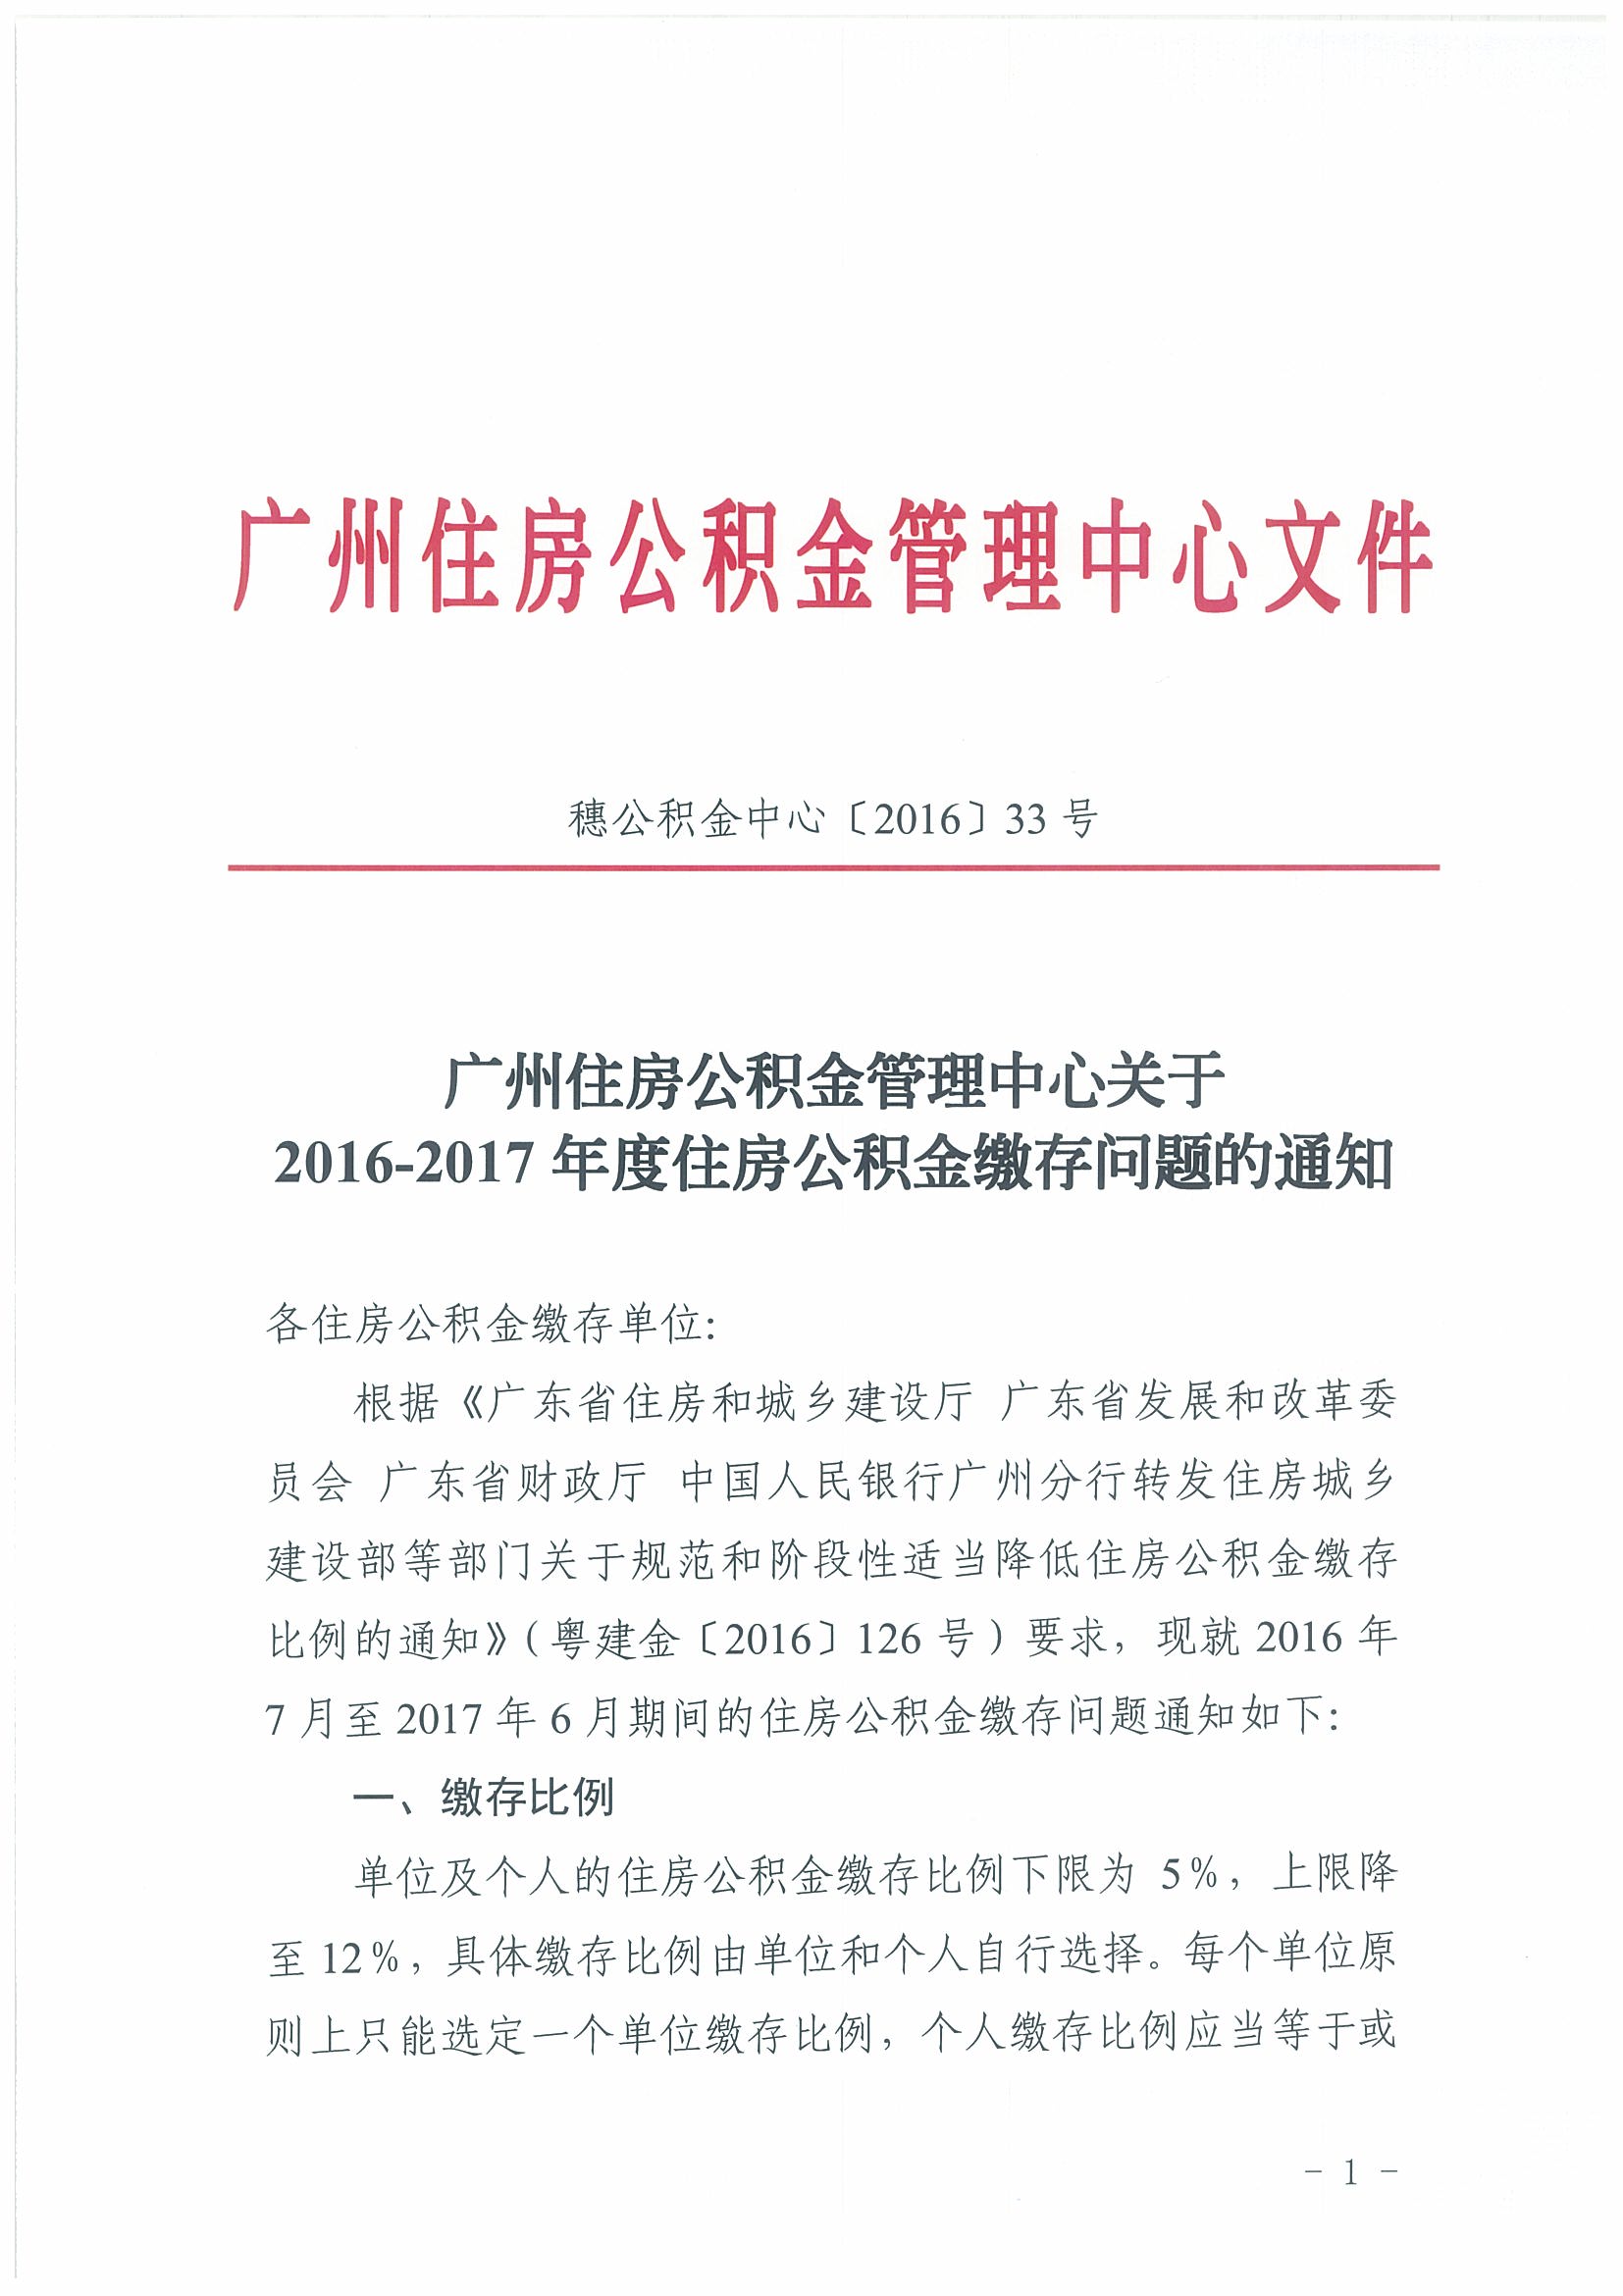 广州住房公积金管理中心关于2016-2017年度住